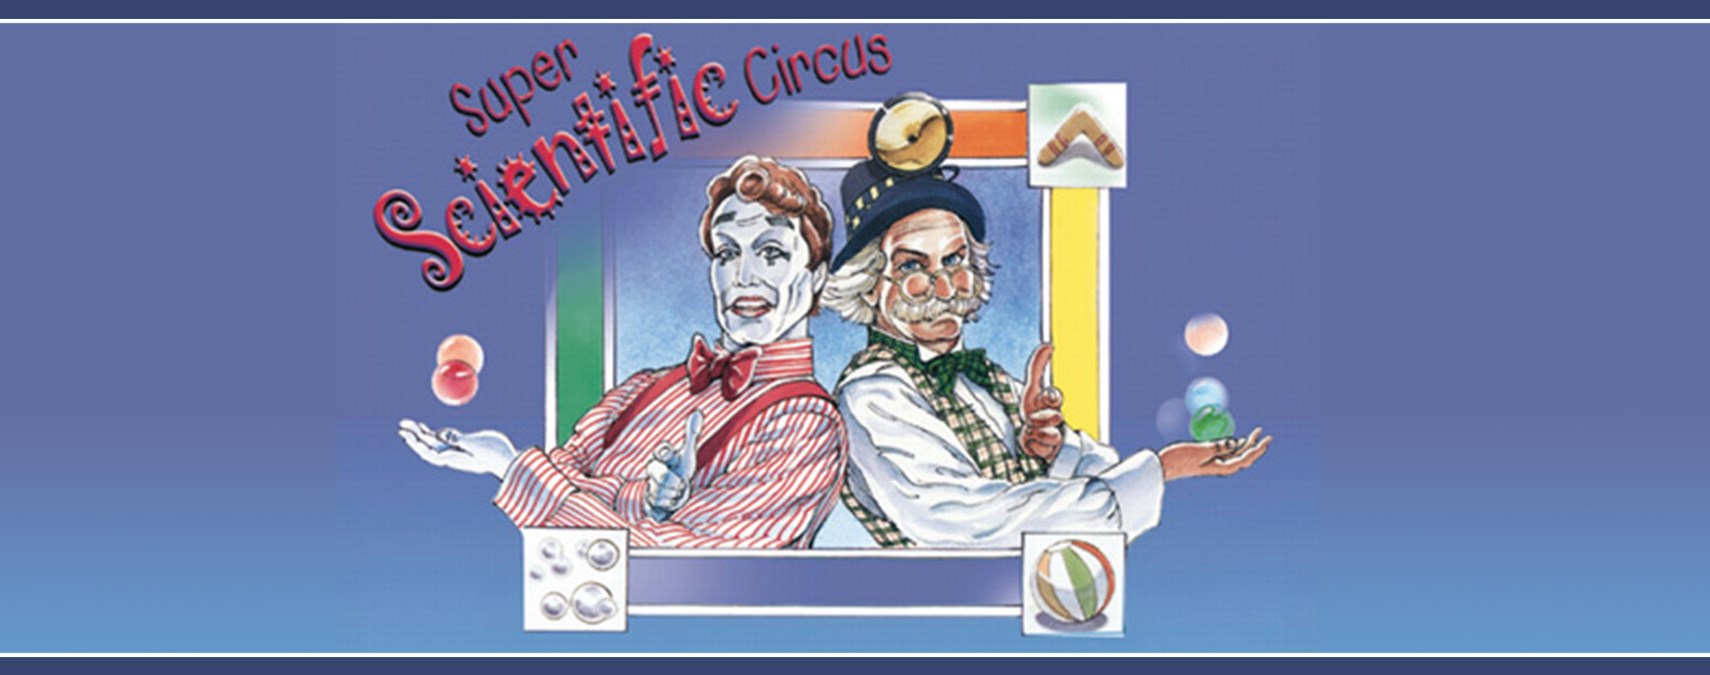 Super Scientific Circus